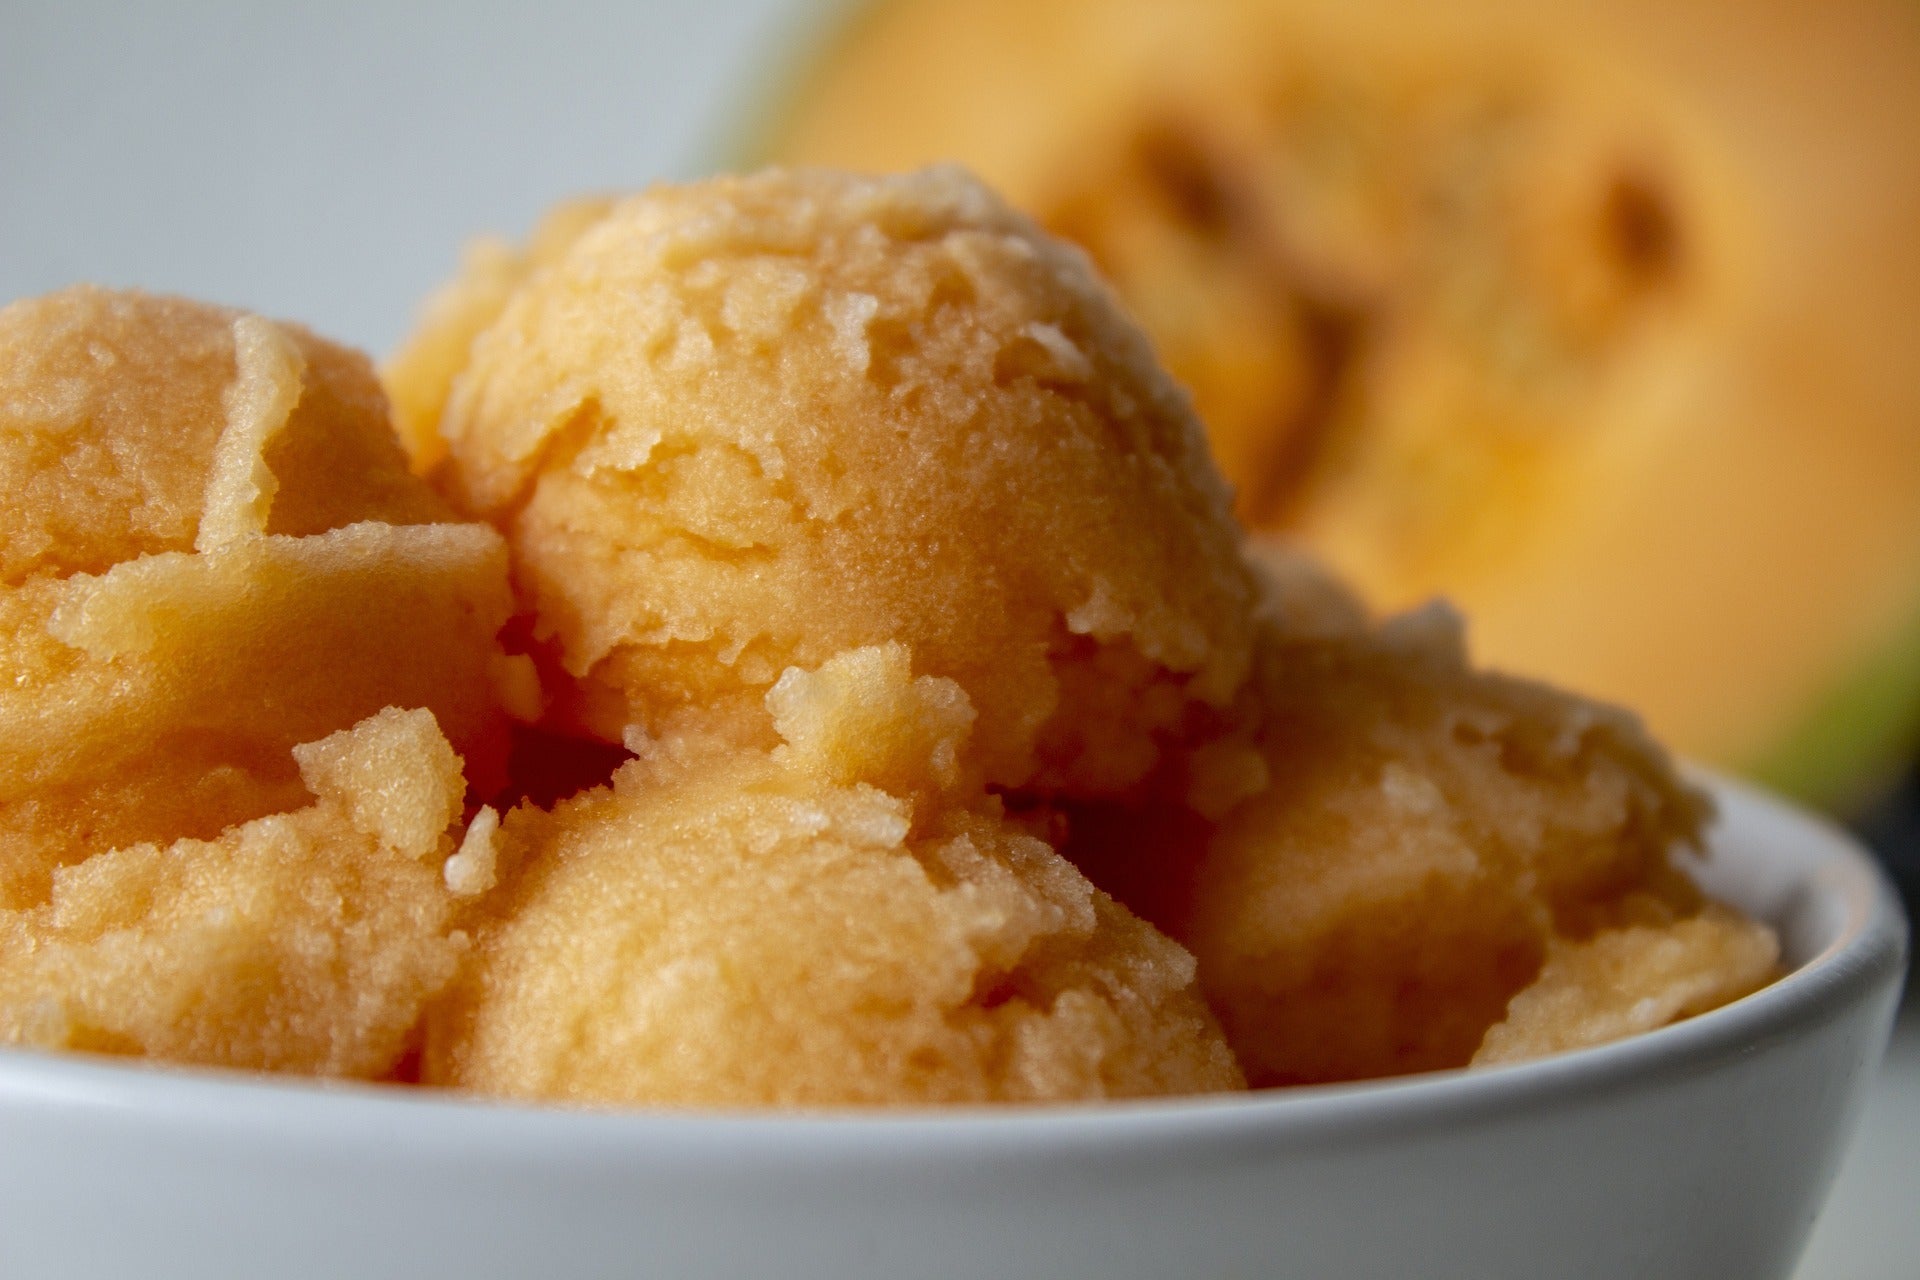 Erfrischende Fusion: Kartoffel-Kürbis Sorbet - Eine köstliche Verbindung von herzhaften Kartoffeln und süßem Kürbis in einem erfrischenden Sorbet. Genuss in jeder Kugel Kartoffel-Kürbis Sorbet